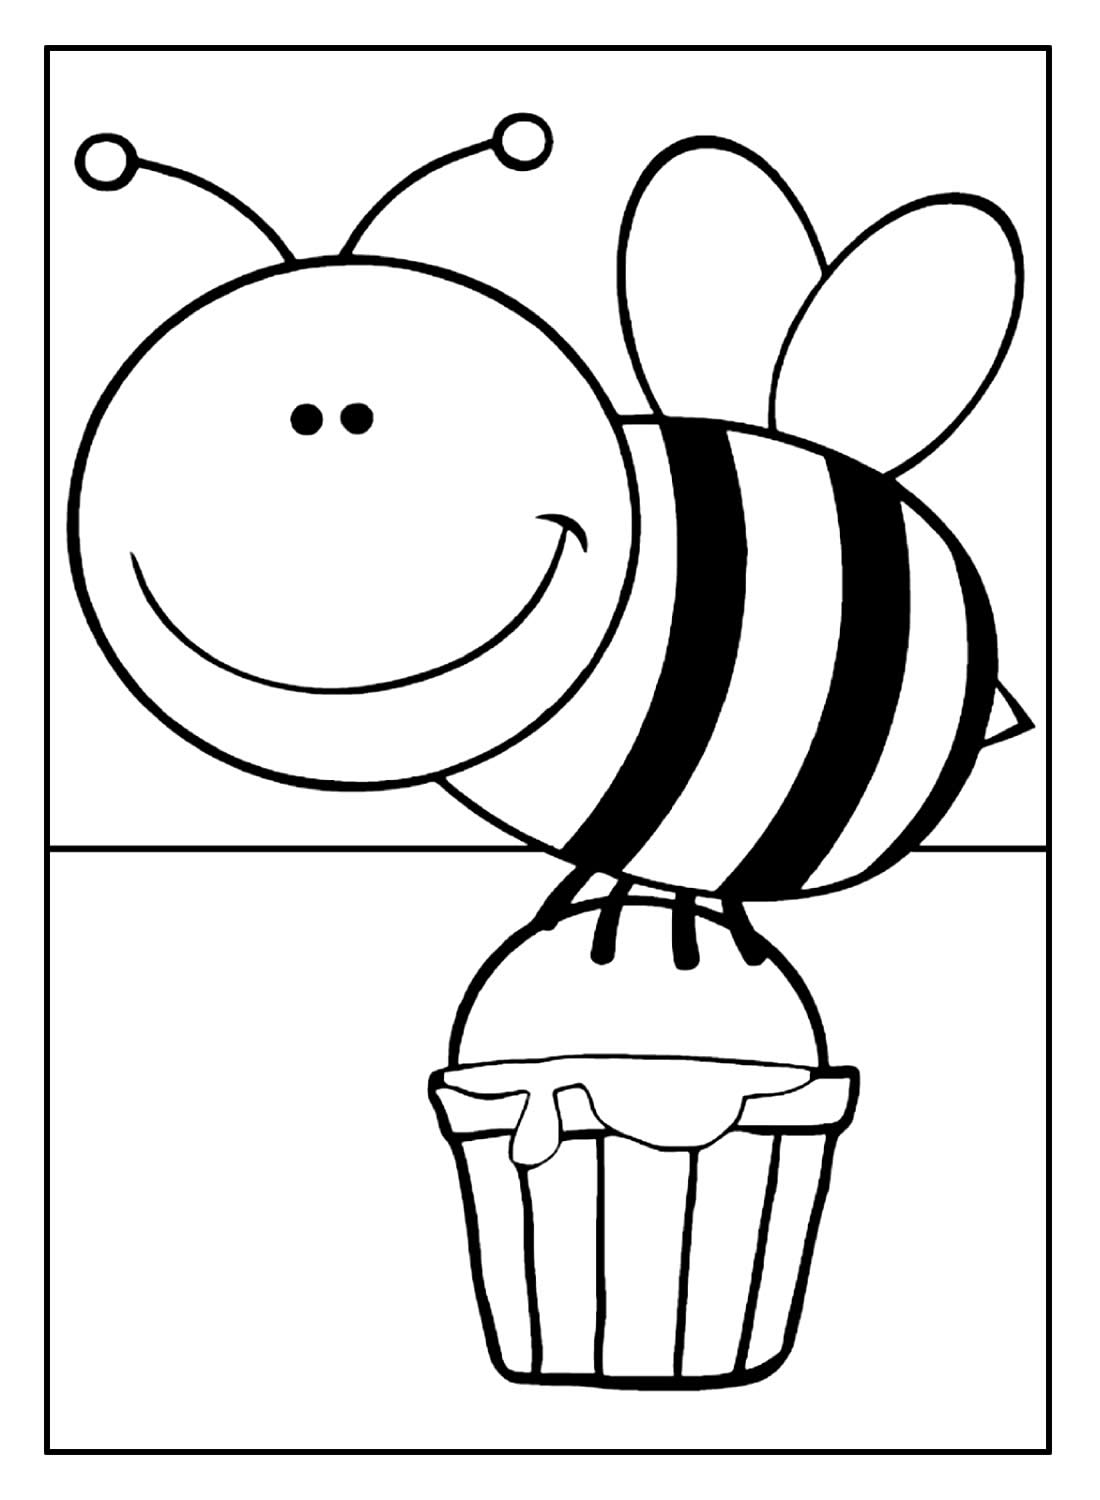 Пчелка раскраска для аппликации